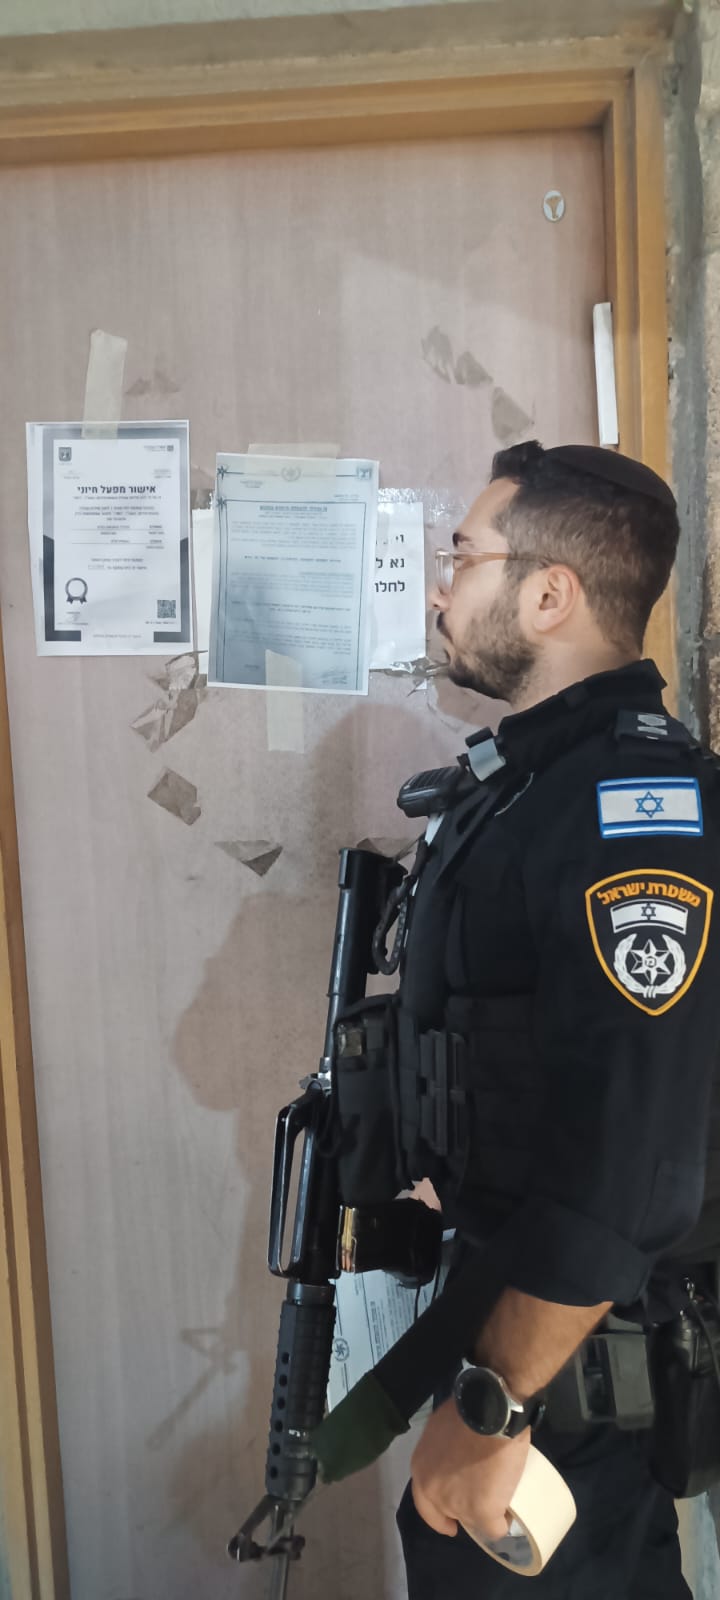 שוטר מדביק את צו הסגירה על בית העסק, צילום: דוברות משטרת ישראל